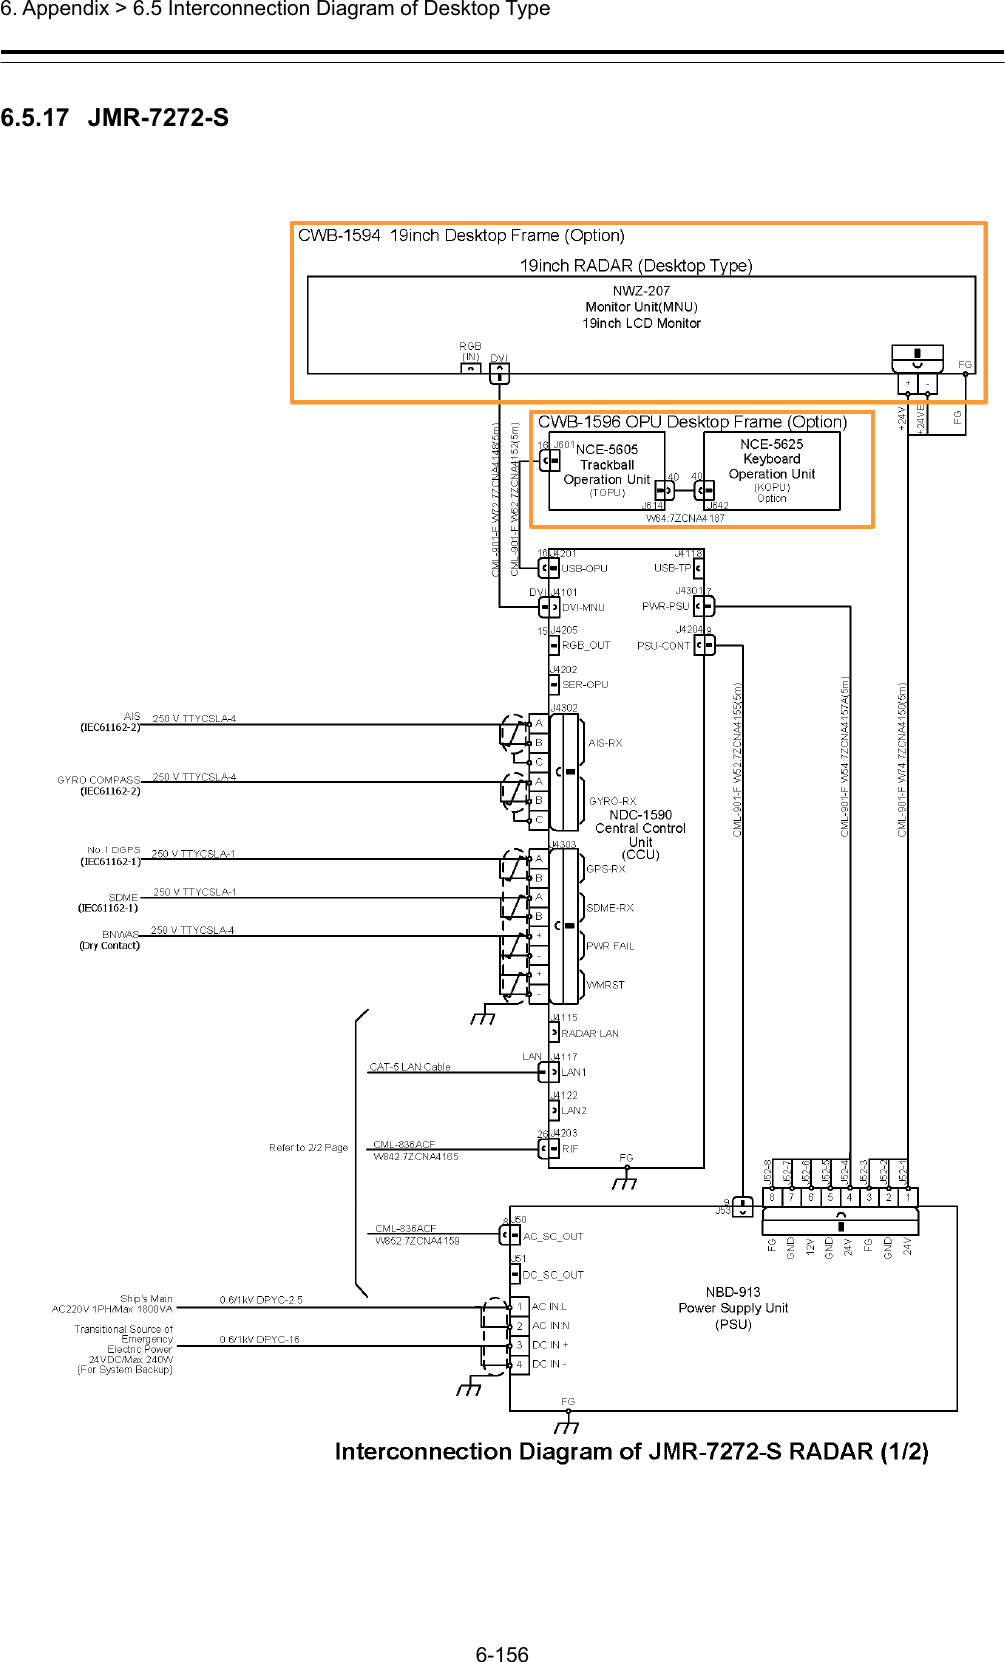  6. Appendix &gt; 6.5 Interconnection Diagram of Desktop Type 6-156  6.5.17  JMR-7272-S  